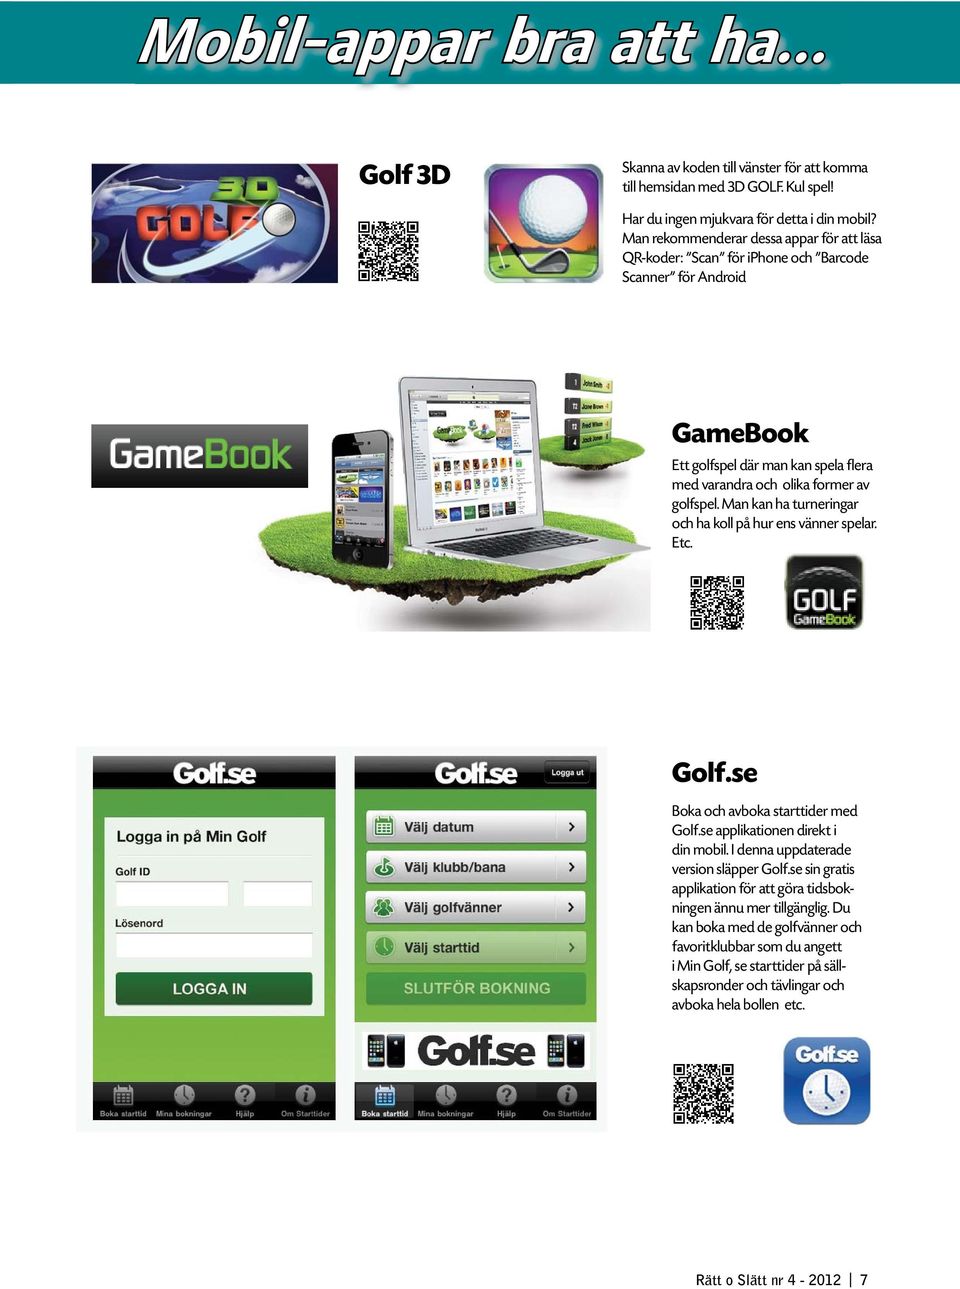 Man kan ha turneringar och ha koll på hur ens vänner spelar. Etc. Golf.se Boka och avboka starttider med Golf.se applikationen direkt i din mobil. I denna uppdaterade version släpper Golf.